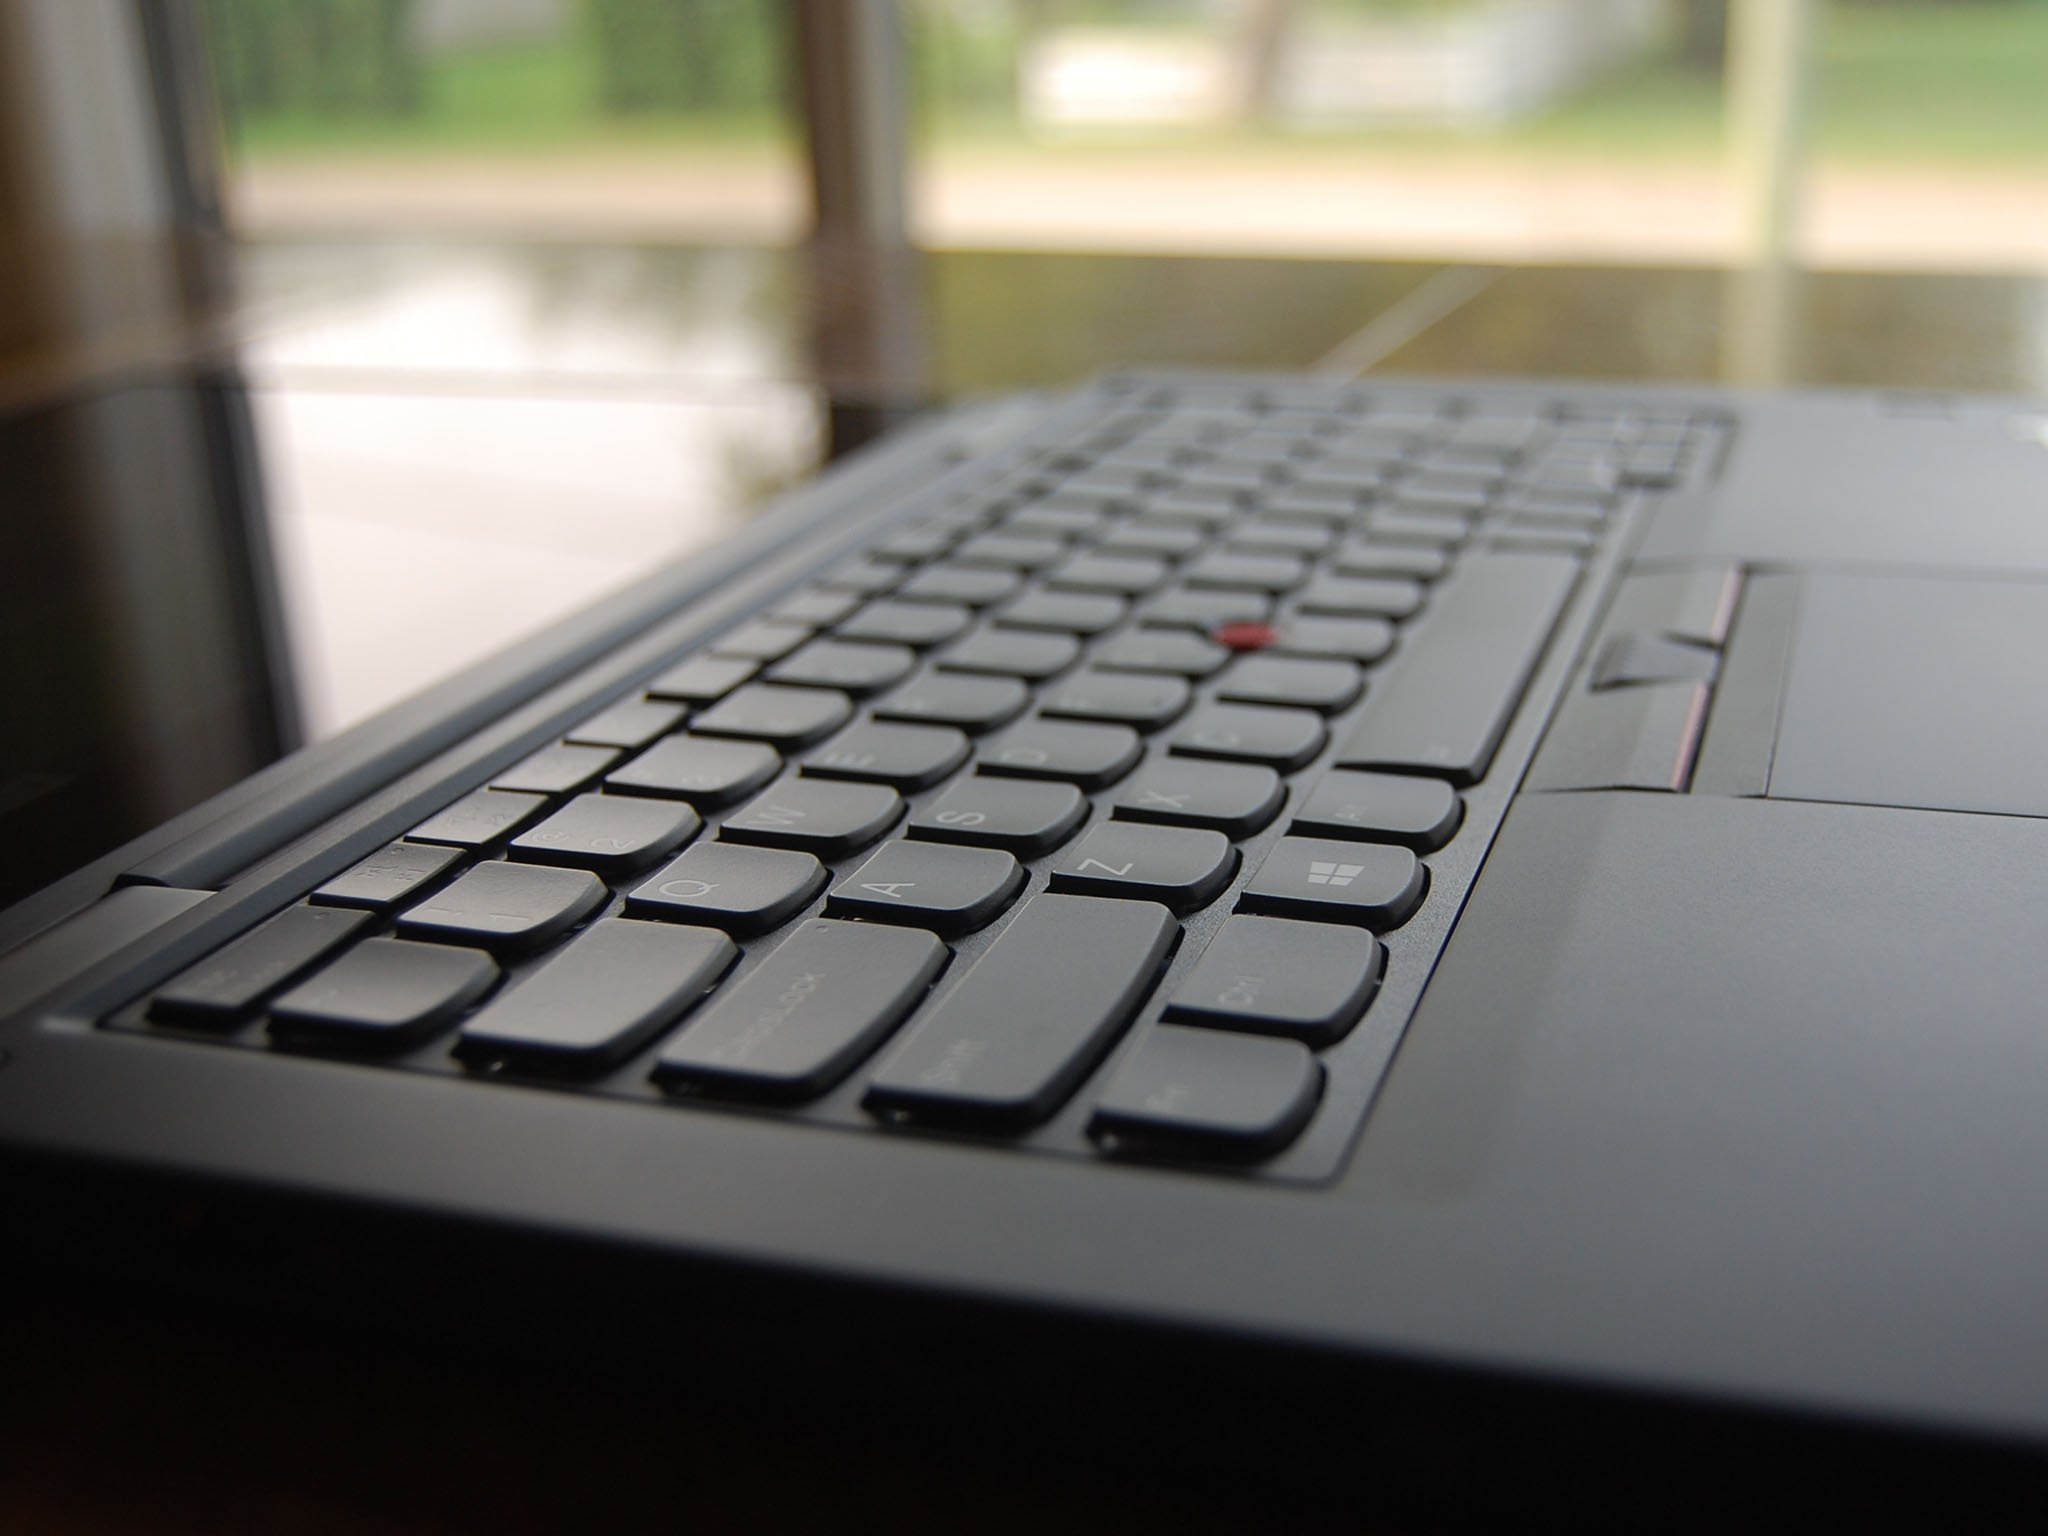 Lenovo ThinkPad X380 Yoga review